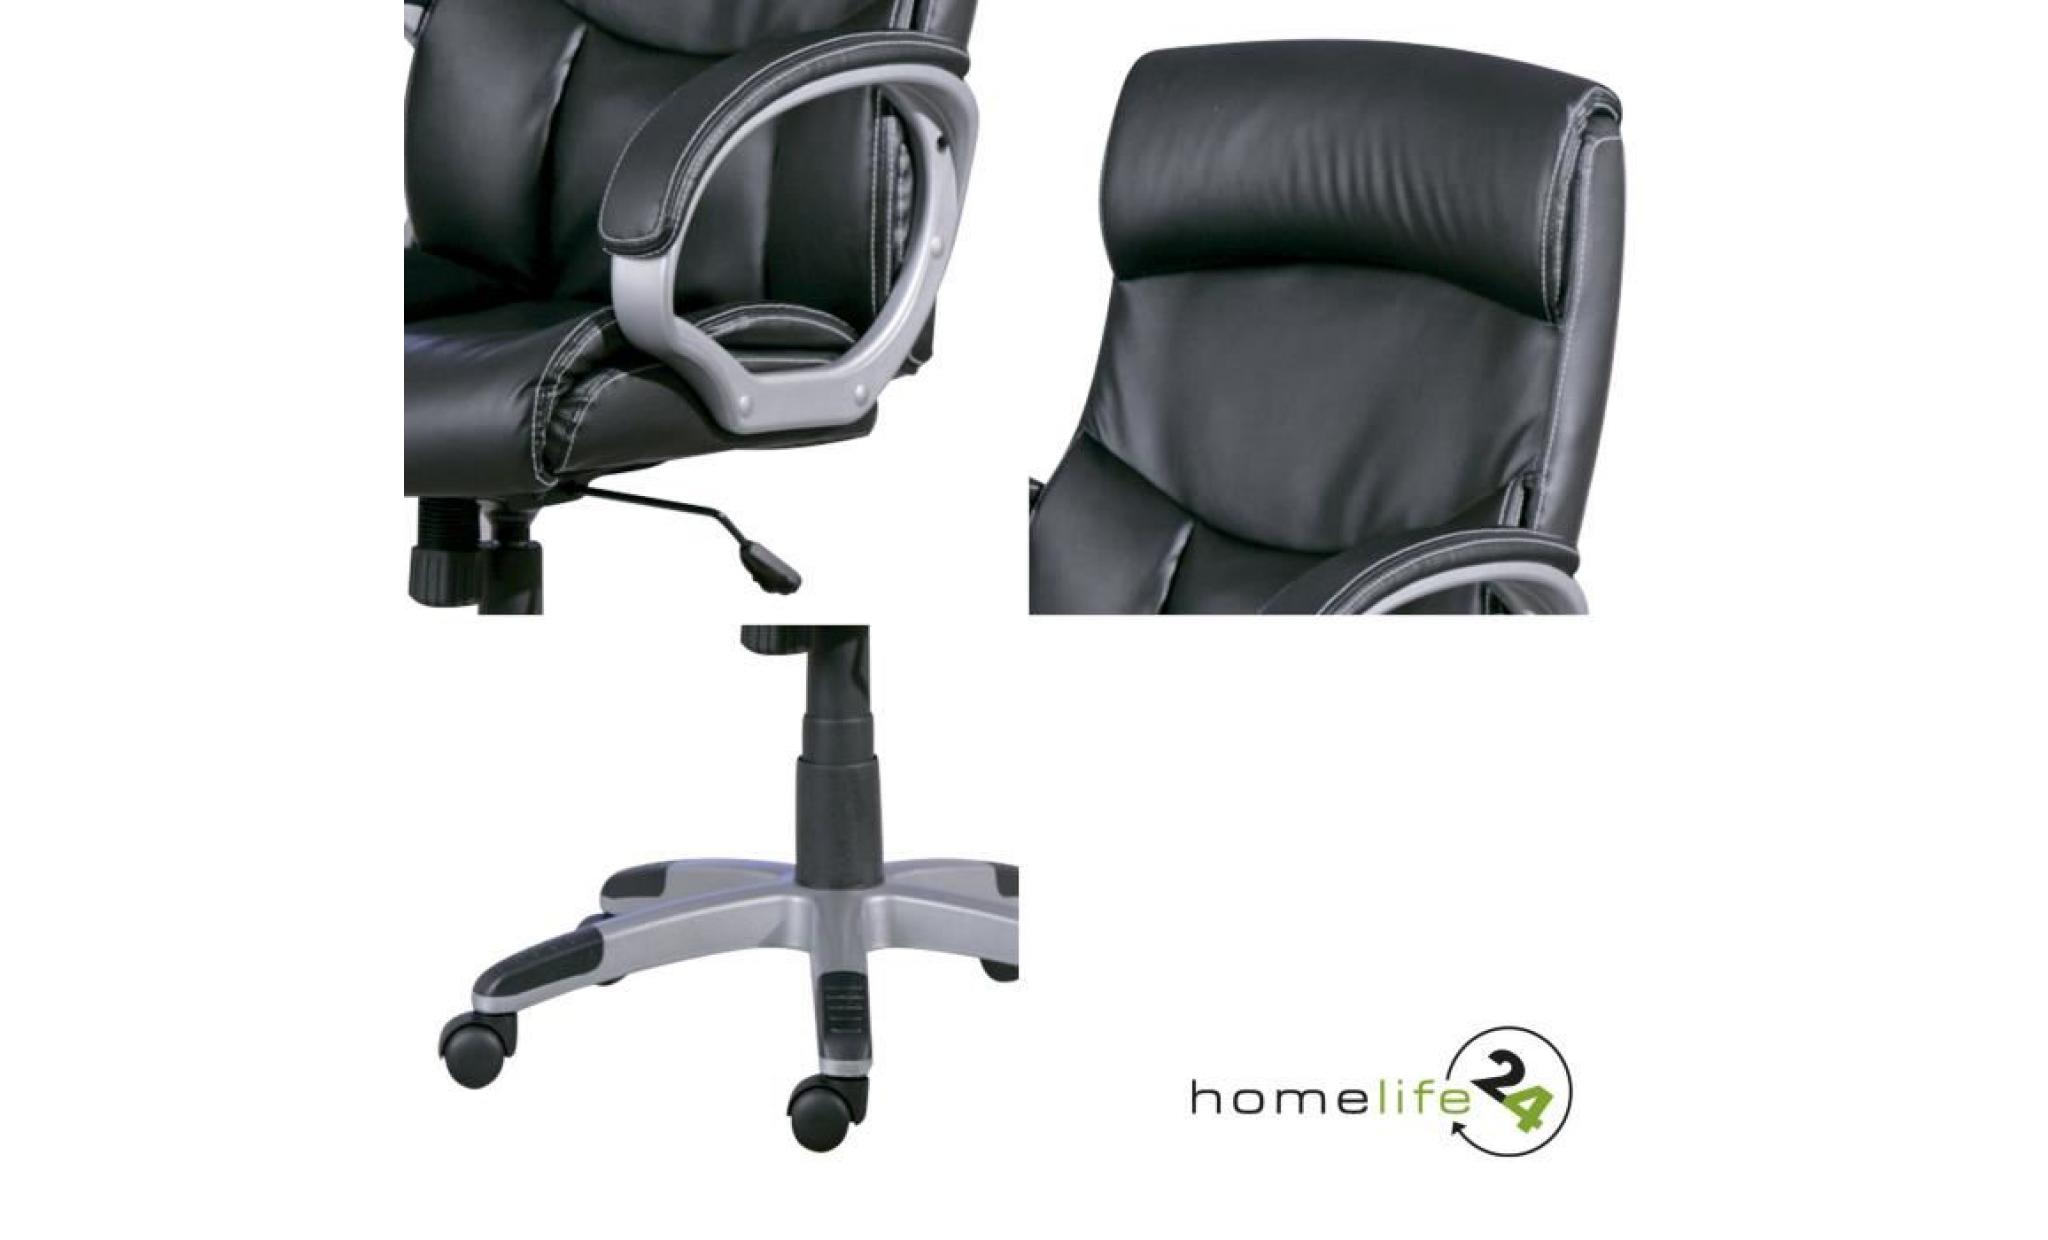 fauteuil bureau, chaise bureau, fauteuil bureau confort, fauteuil de bureau roulette fauteuil inclinable fauteuil bureau confortable pas cher